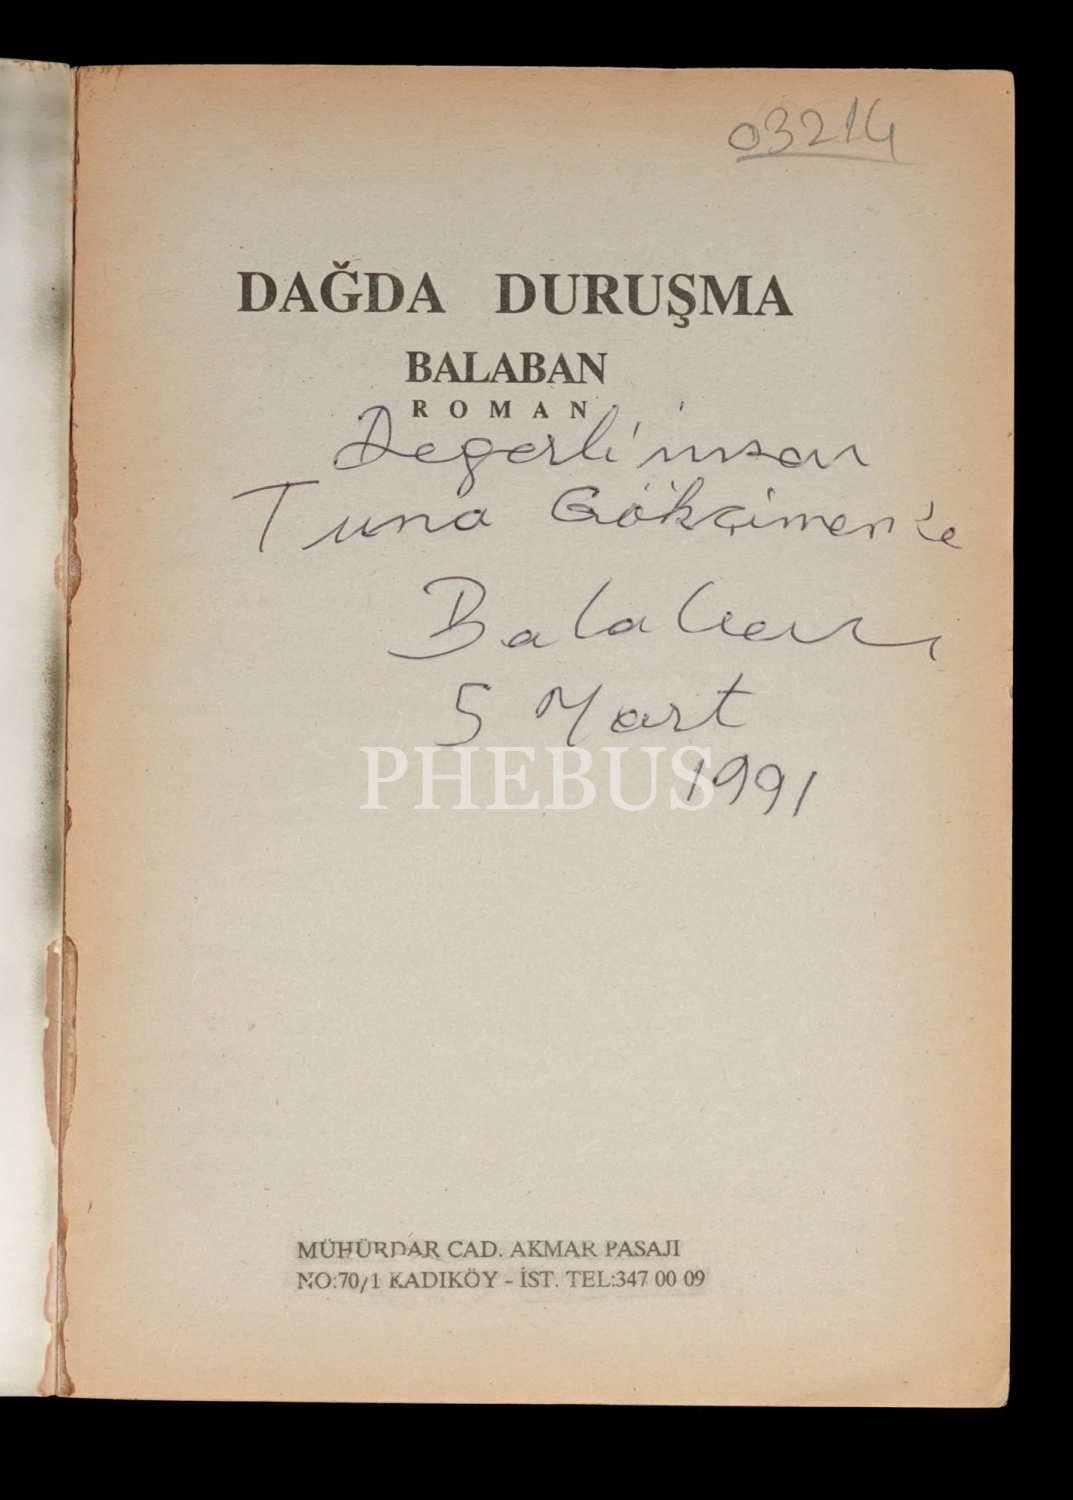 DAĞDA DURUŞMA, İbrahim Balaban, 1990, Bilim Kitabevi, 390 sayfa, 14x19 cm...